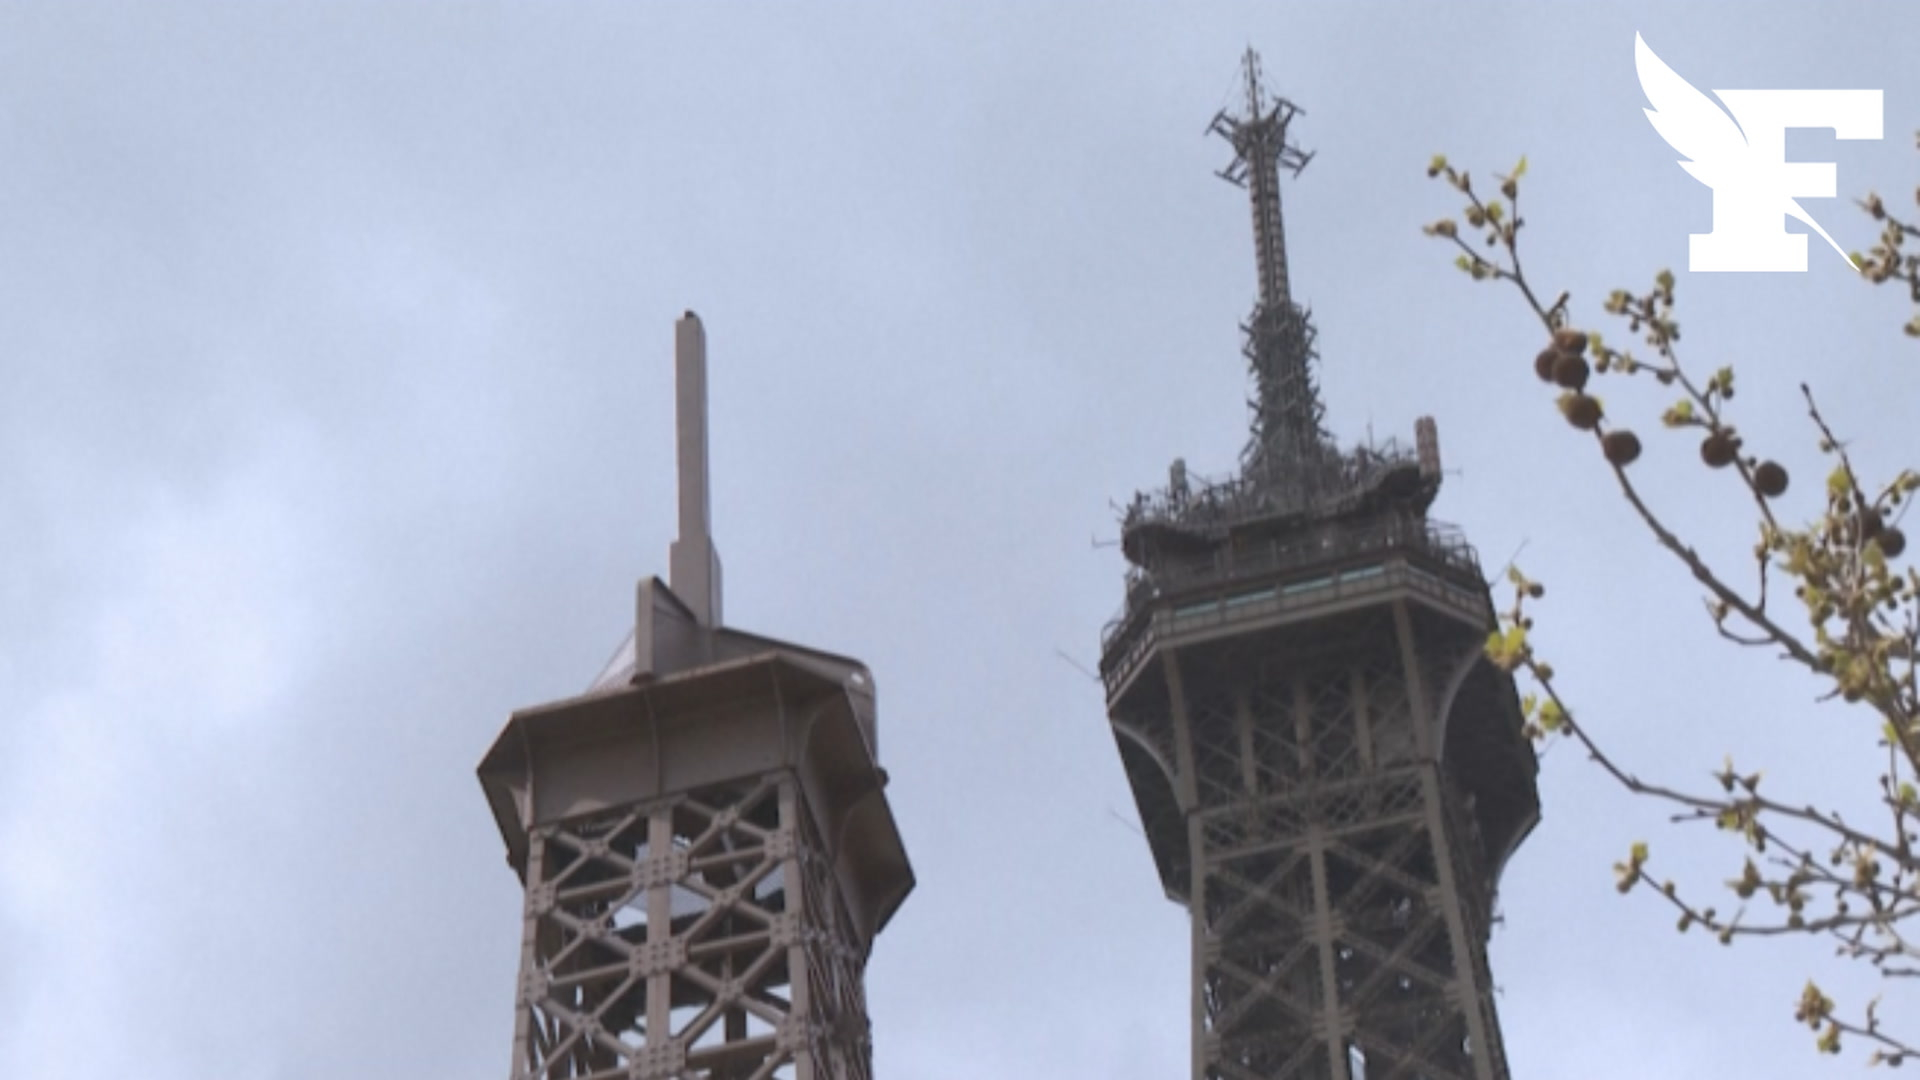 Une réplique de la Dame de Fer installée au pied de la Tour Eiffel !